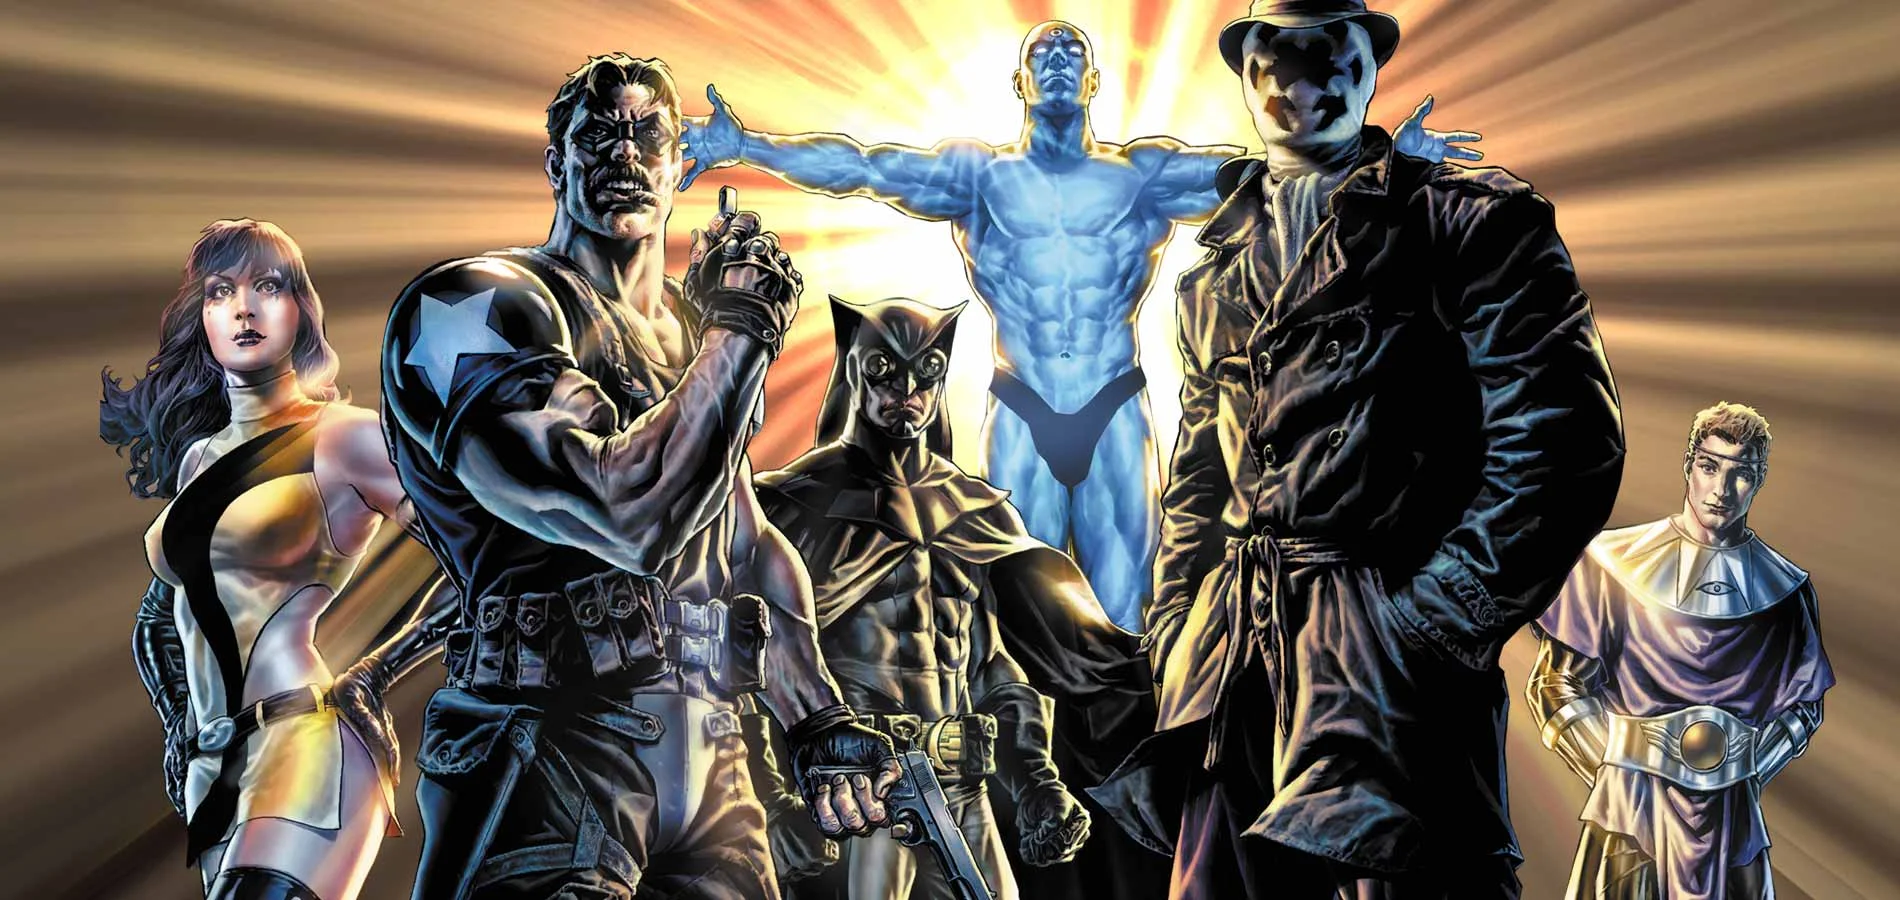 В честь старта сериала «Хранители» на HBO — мы решили вспомнить оригинальный комикс Watchmen и рассказать вам о том, почему с ним обязательно стоит познакомиться, если вы этого не сделали ранее.